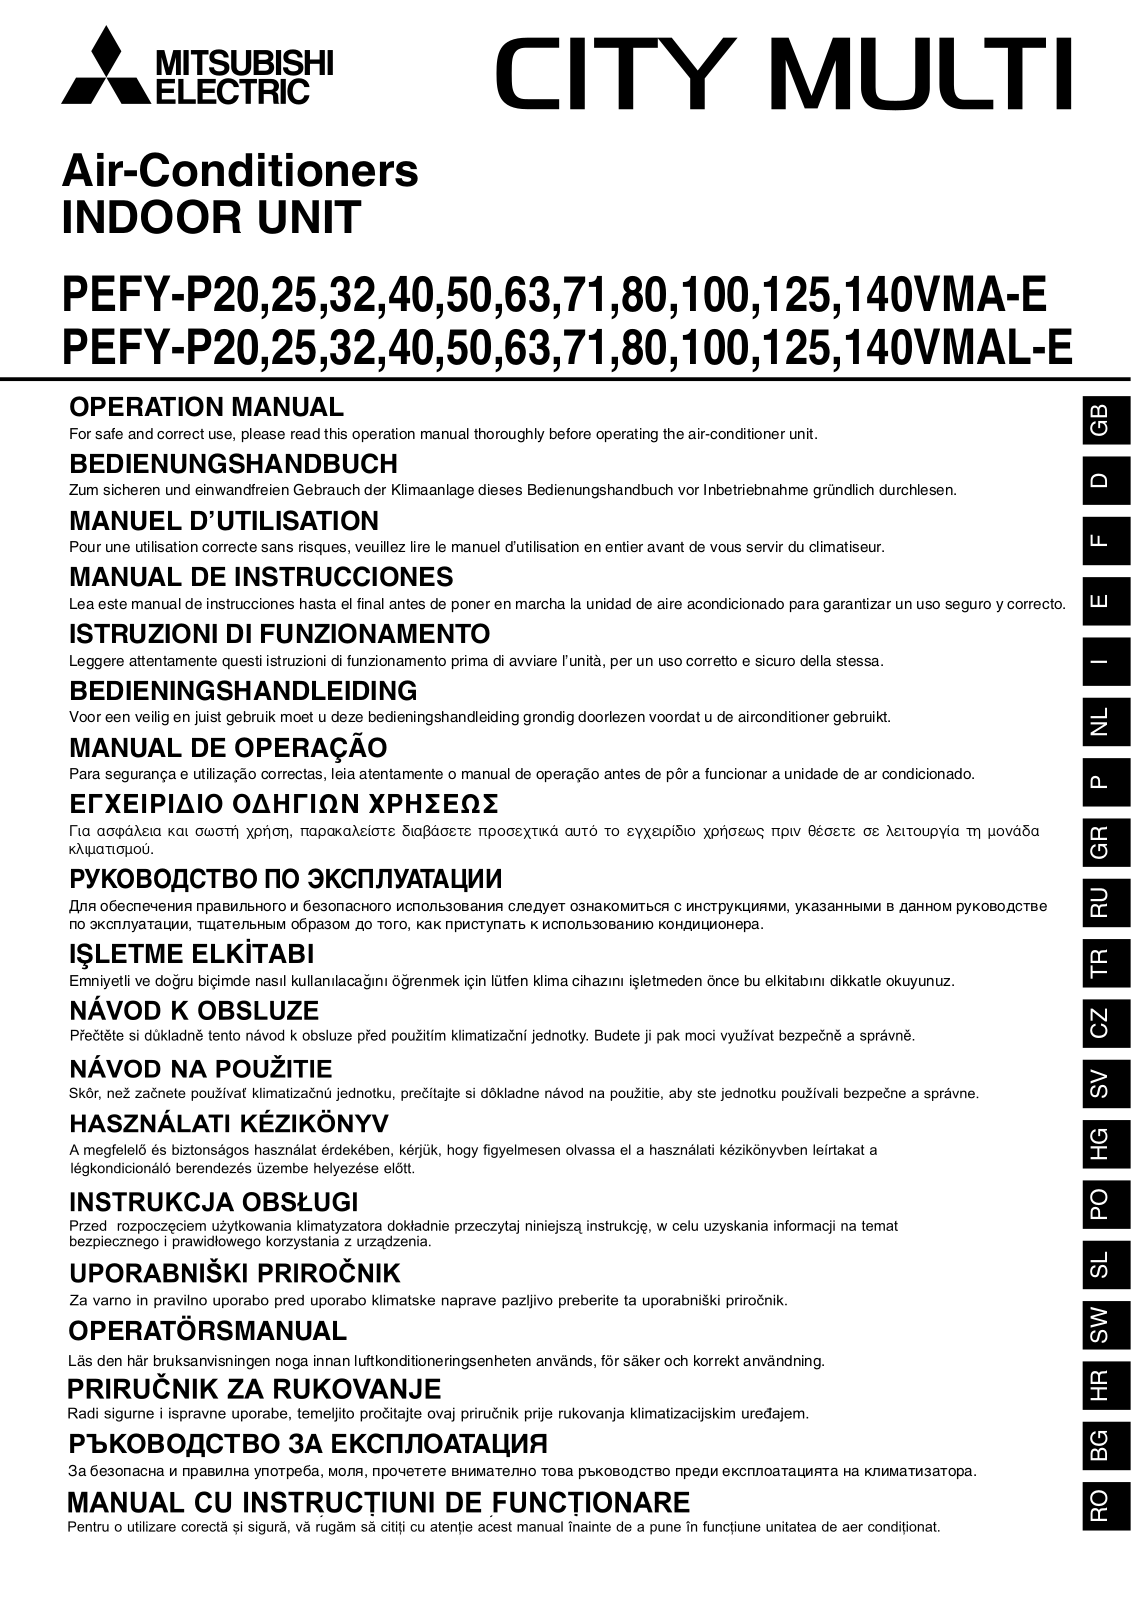 Mitsubishi electric PEFY-P63VMAL-E User Manual